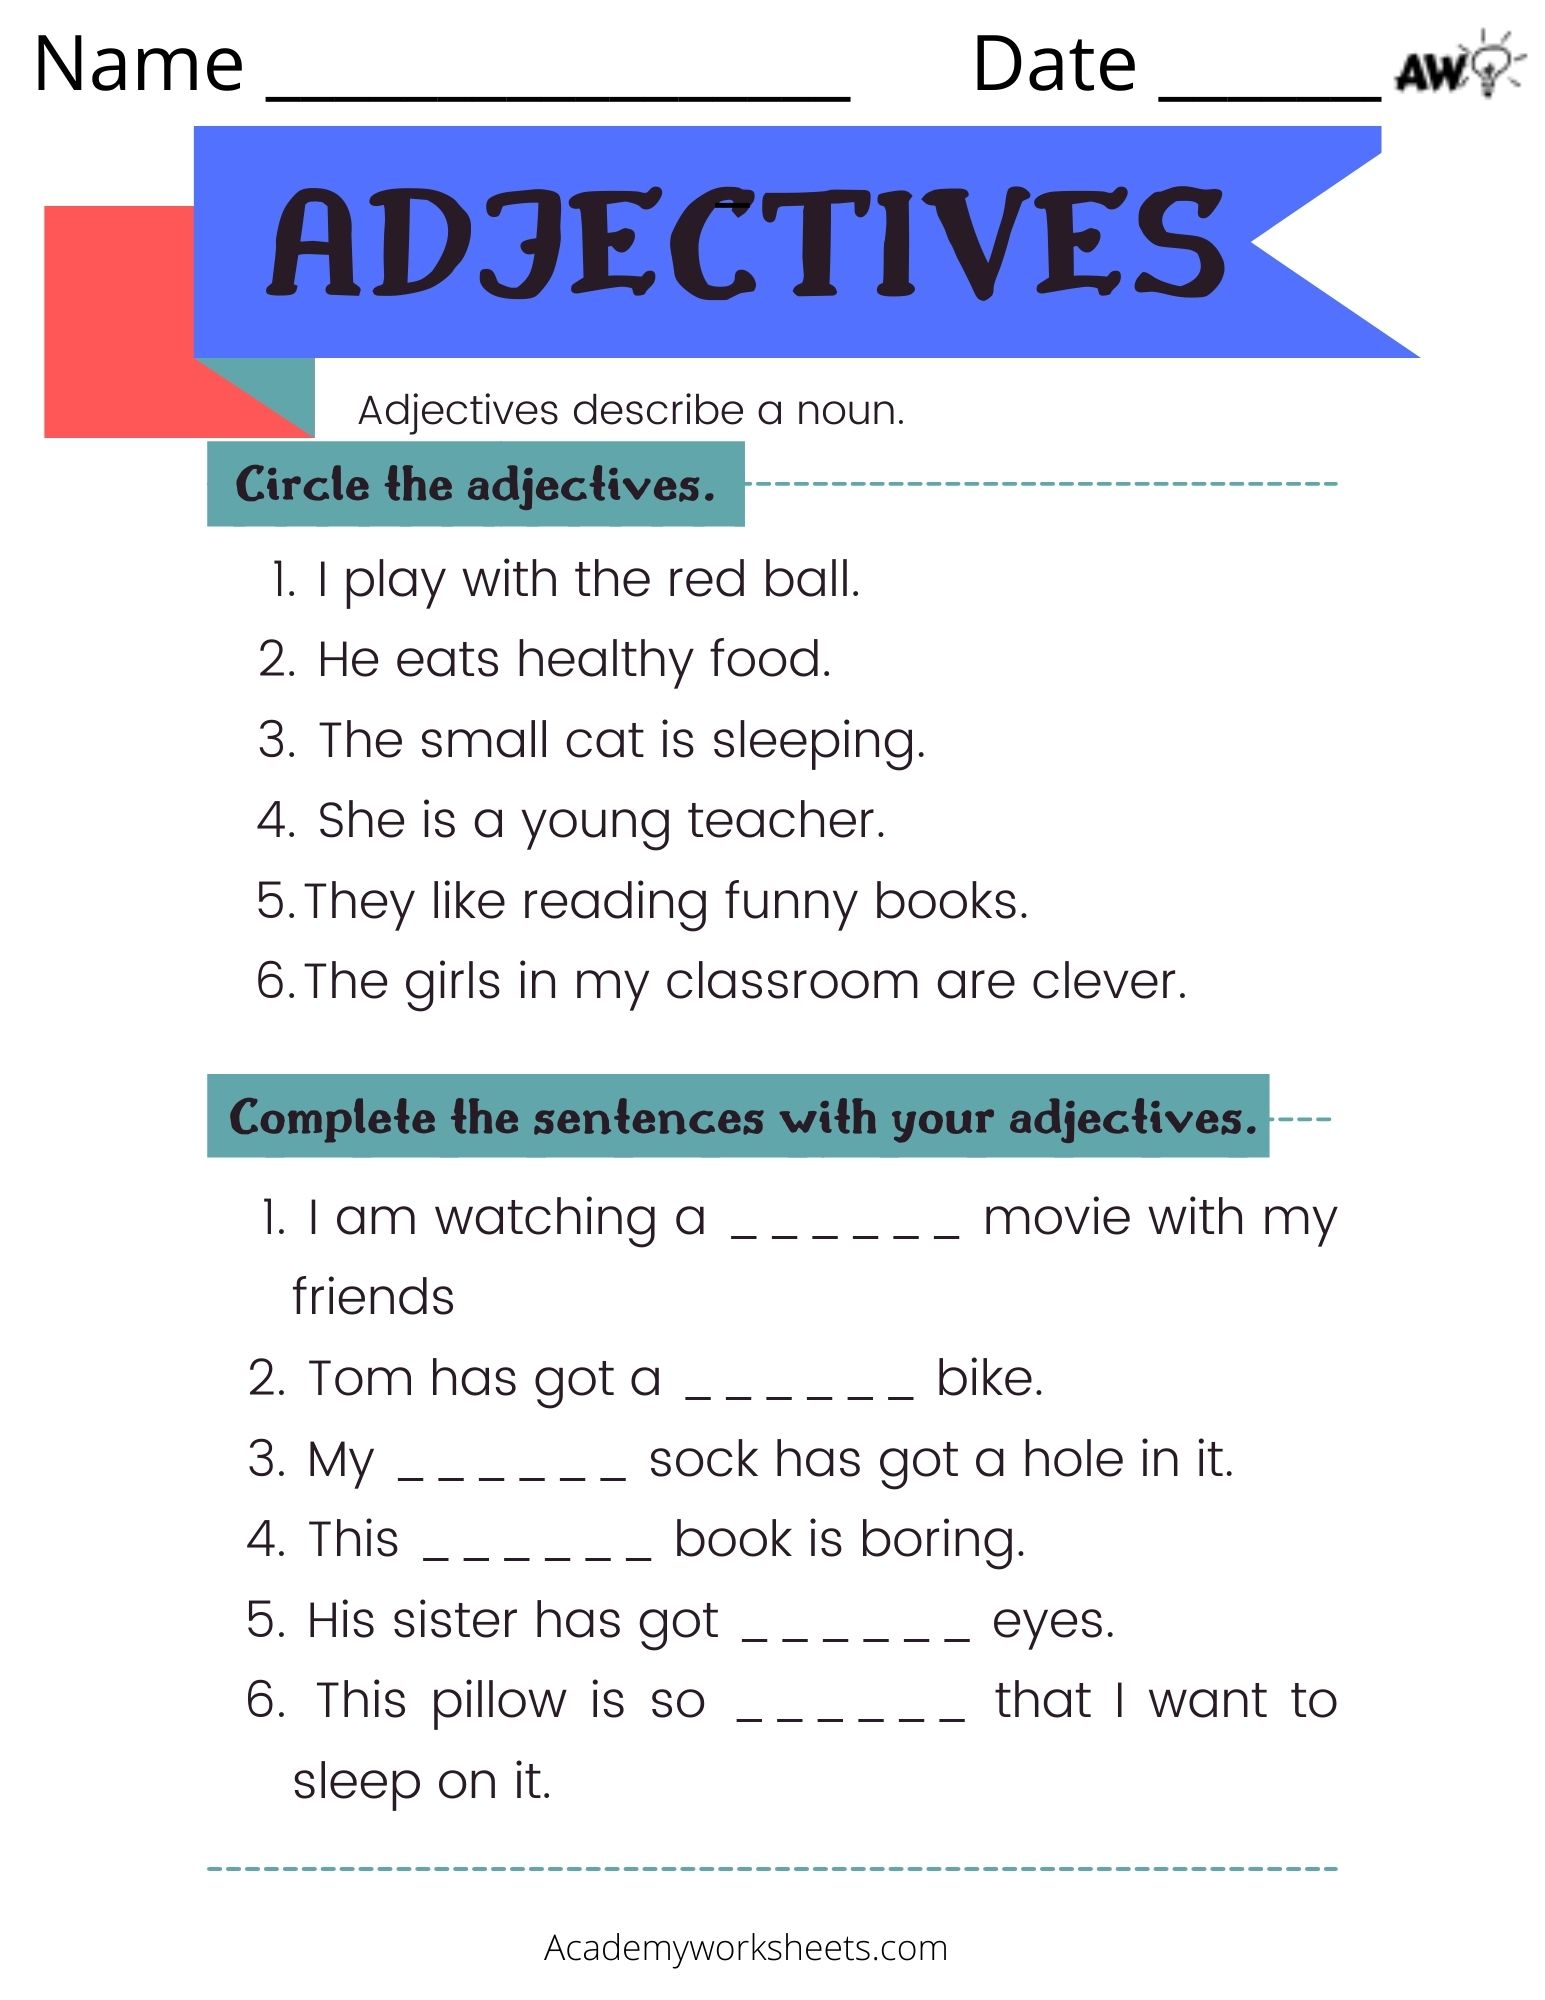 is homework an adjective or a noun